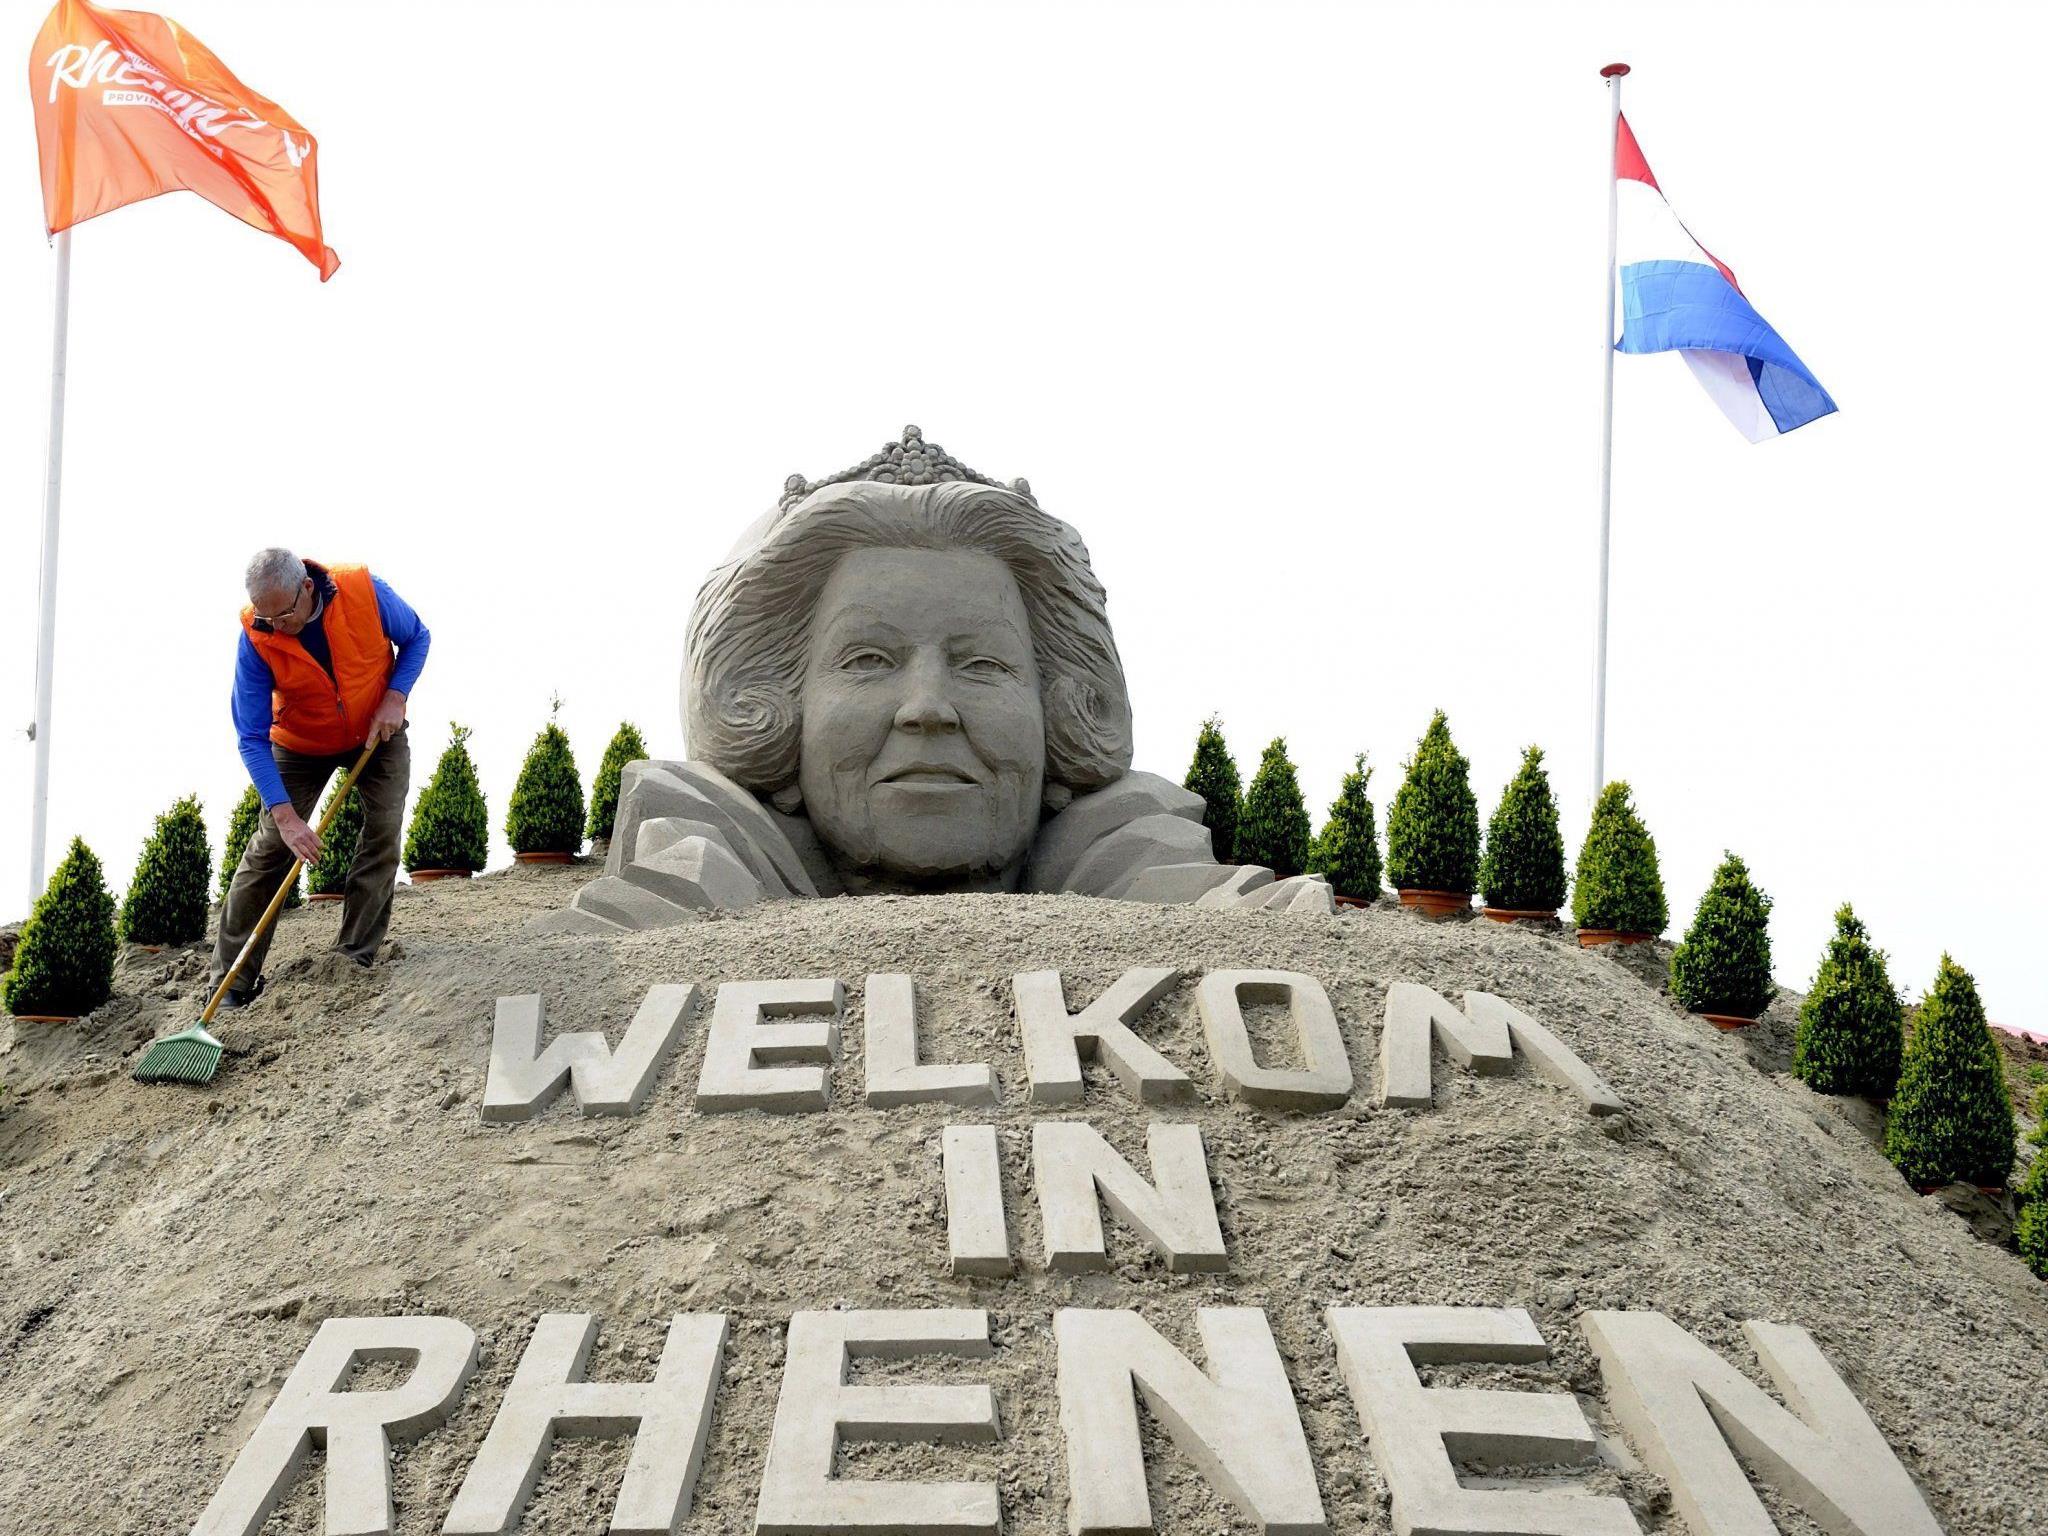 Beatrix kommt heuer nach Rhenen bei Utrecht - wo zu ihren Ehren eine große Sand-Skulptur errichtet wurde.